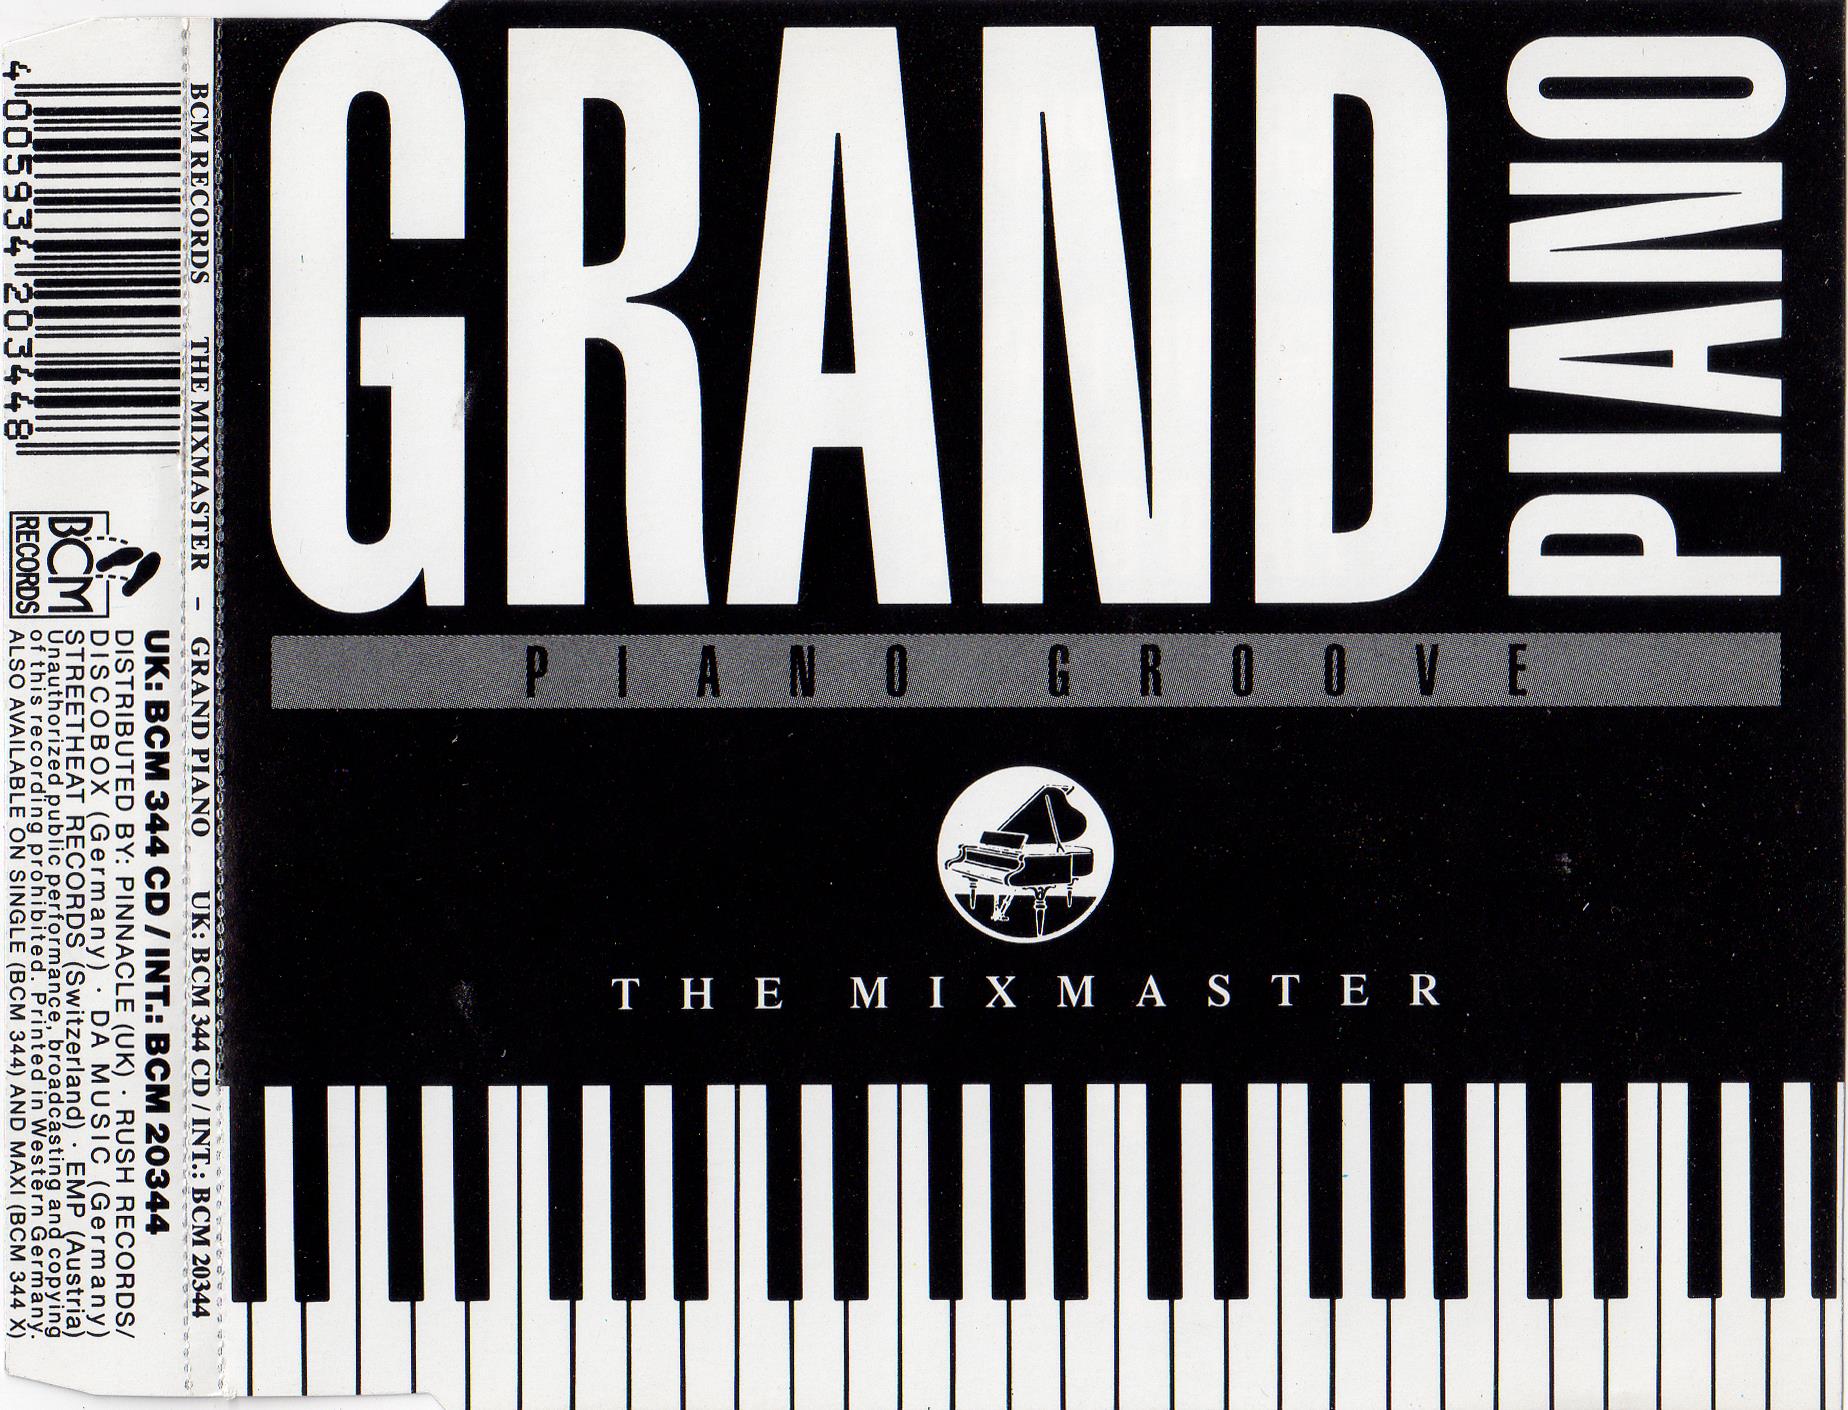 Mixmaster, The - Grand Piano (Cdm)(1989)